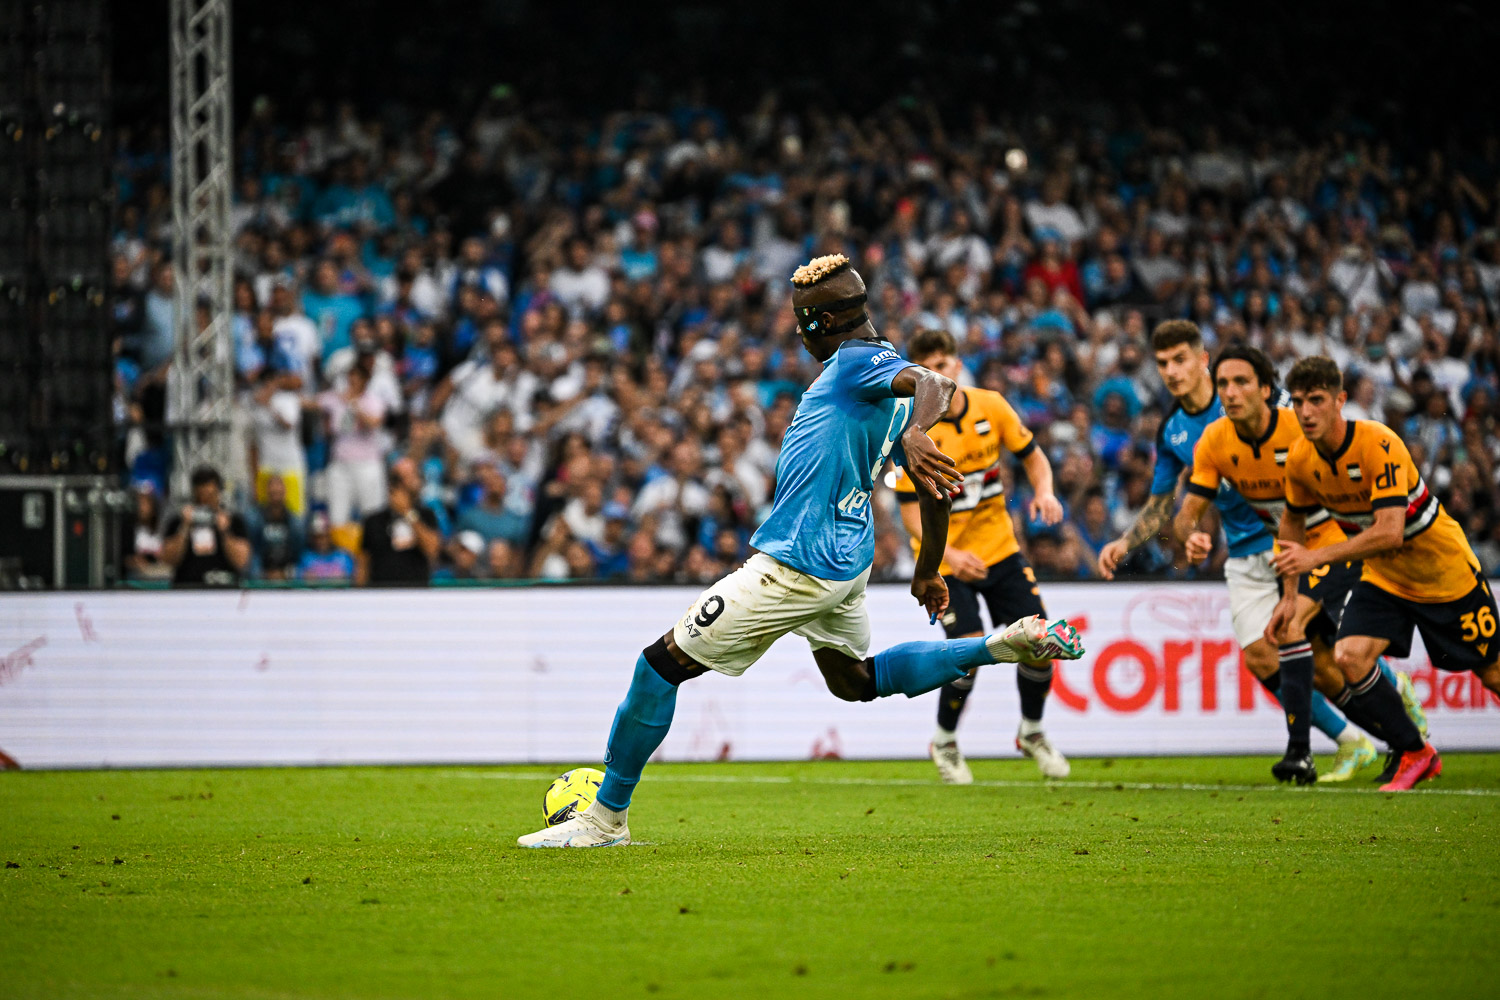 Simeone segna 2-0 Napoli ed esulta con in mano la maglia di Maradona